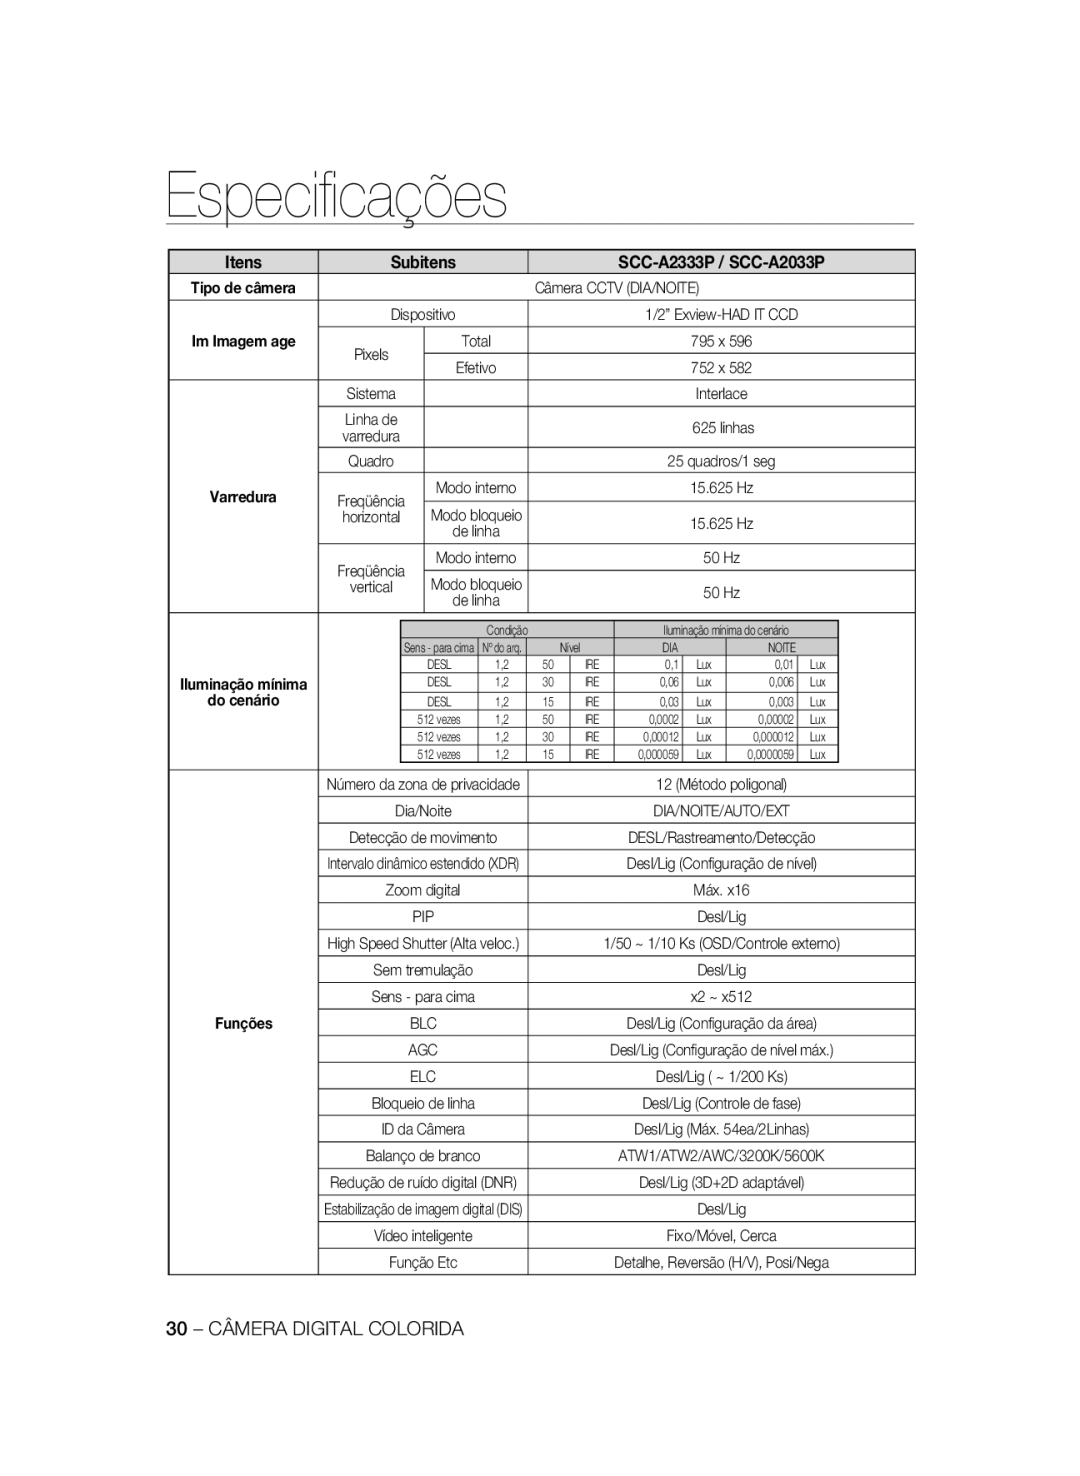 Samsung manual Especiﬁcações, Itens, Subitens, SCC-A2333P / SCC-A2033P, Im Imagem age, do cenário, Funções 